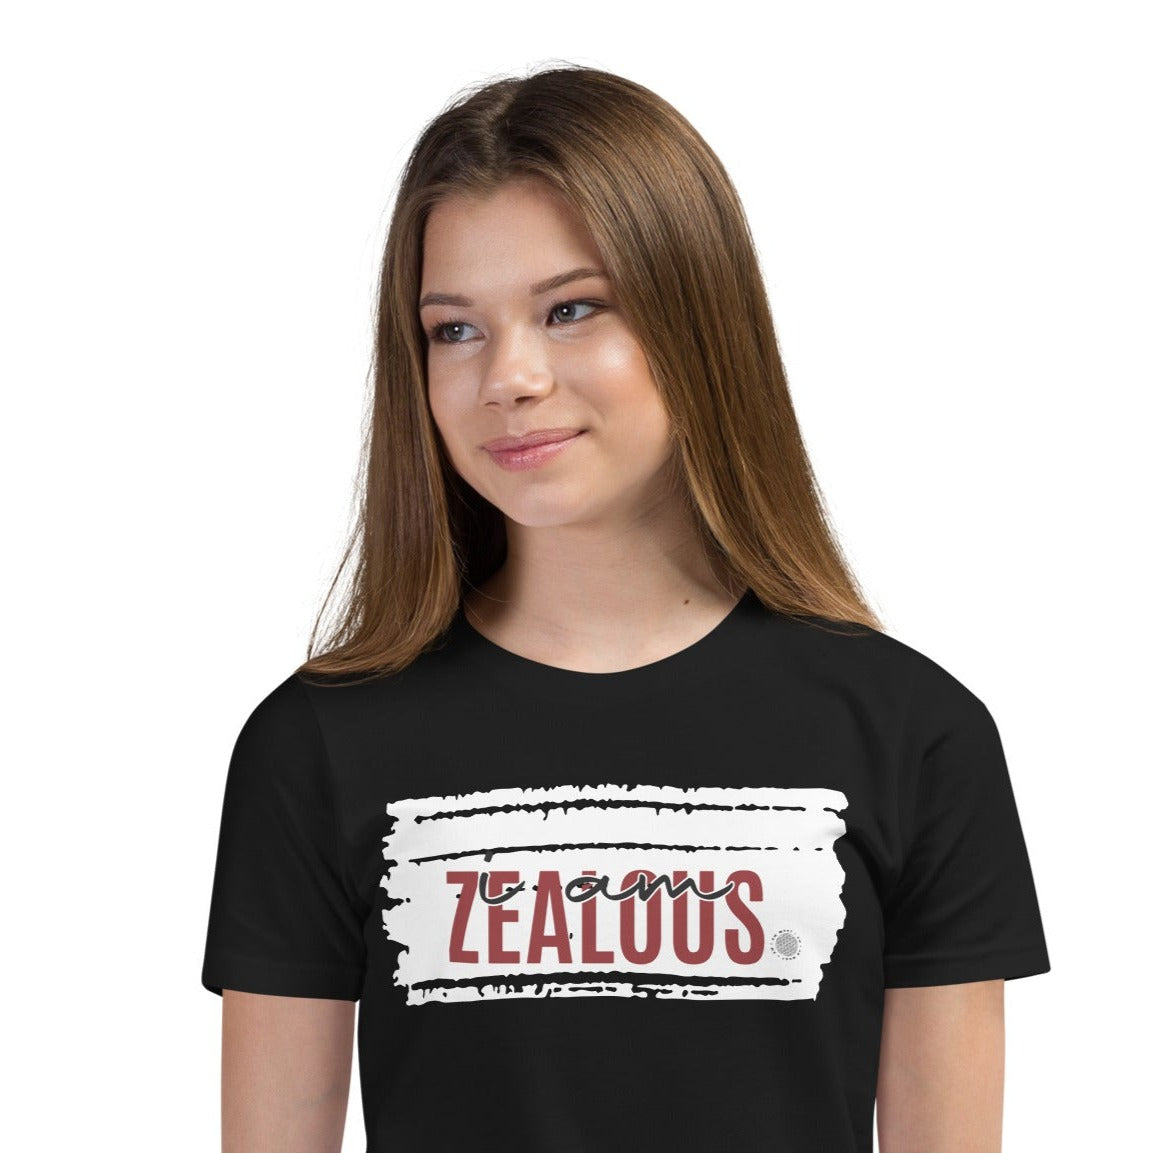 I Am Zealous Youth T-Shirt black